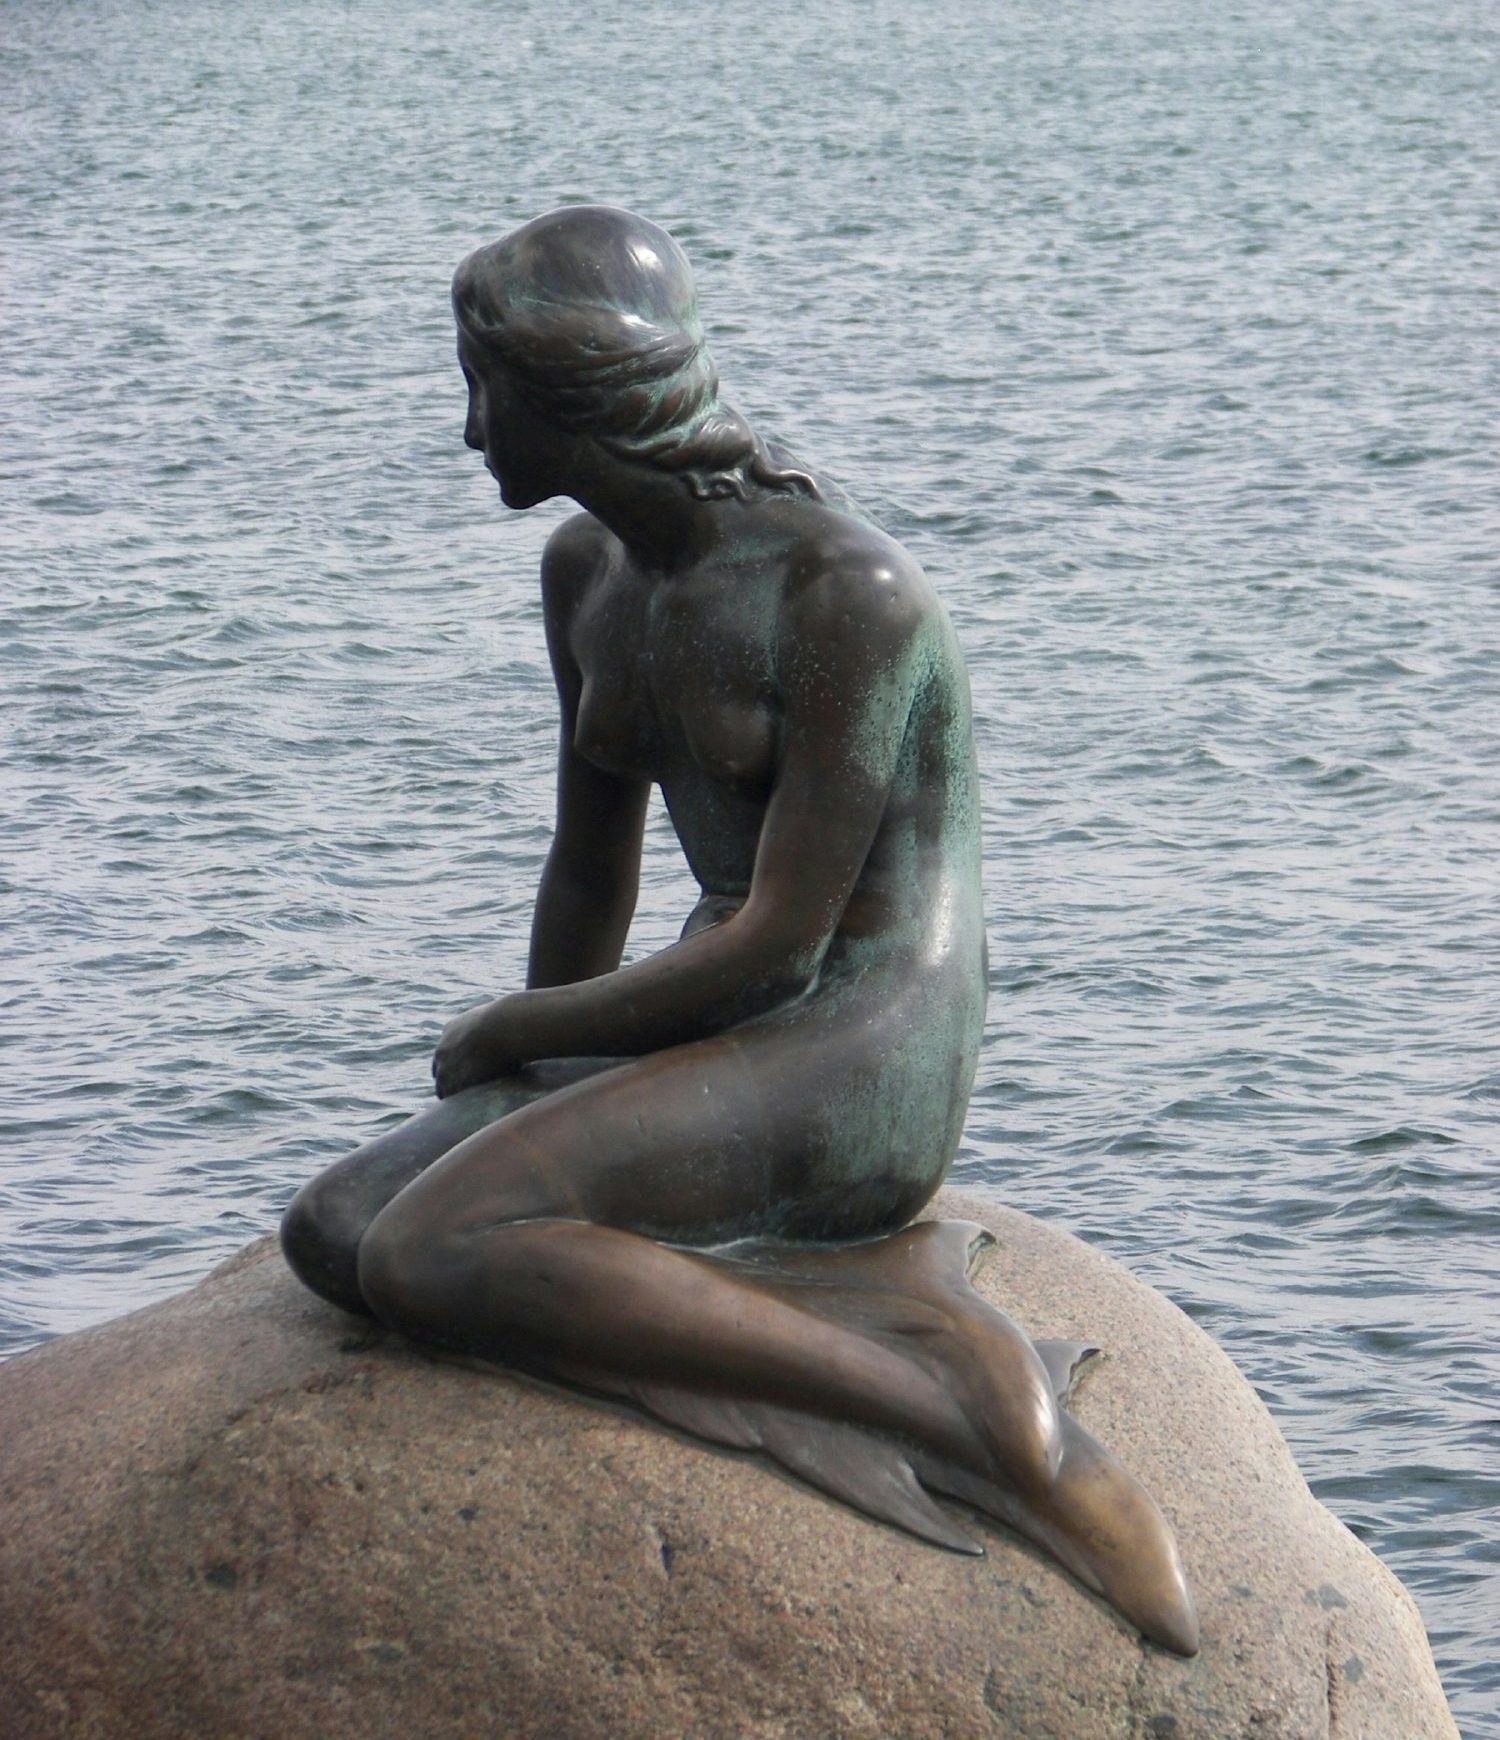 Hans Christian Andersen's Little Mermaid statue. Image: kkg4678/Budget Travel 